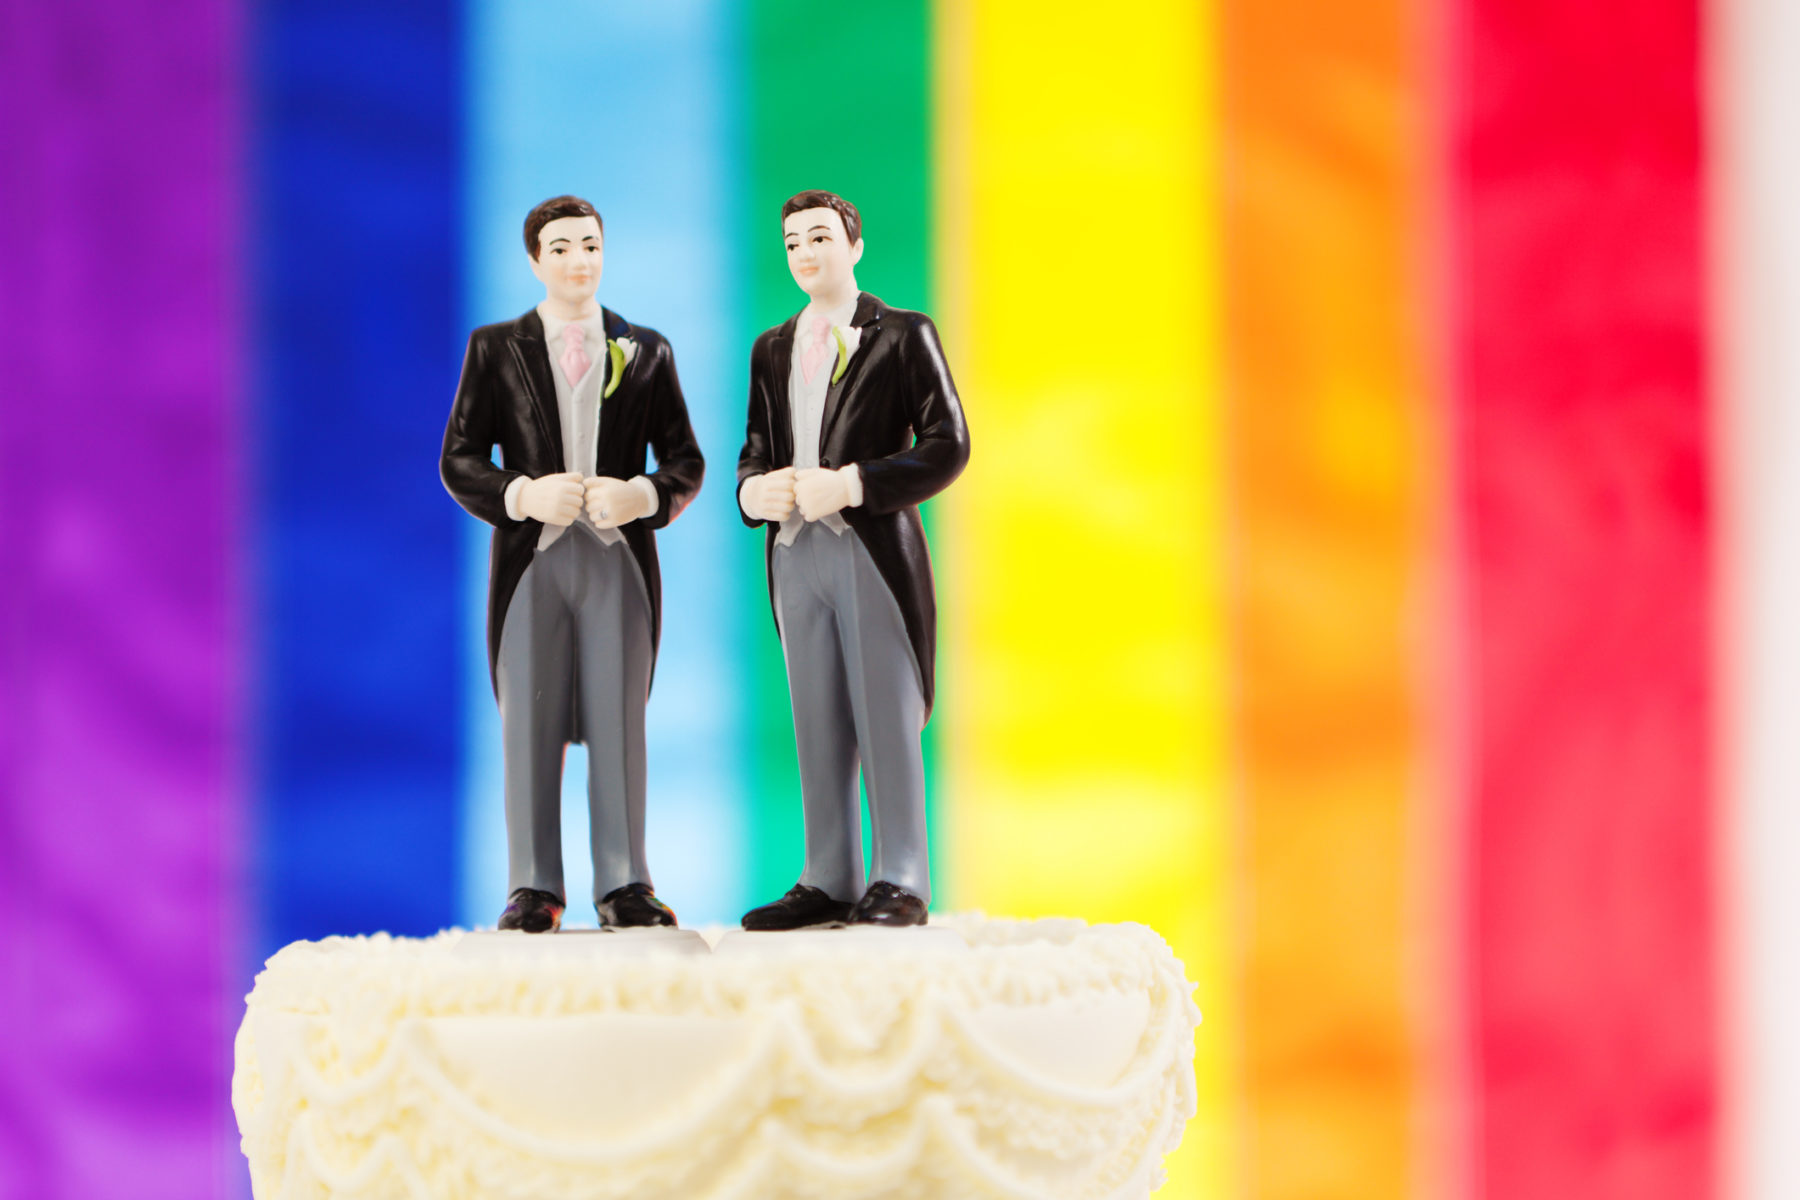 Deux petites figurines d'hommes en costumes au sommet d'un gâteau de mariage. En arrière-plan, les couleurs du drapeau LGBT, arc-en-ciel